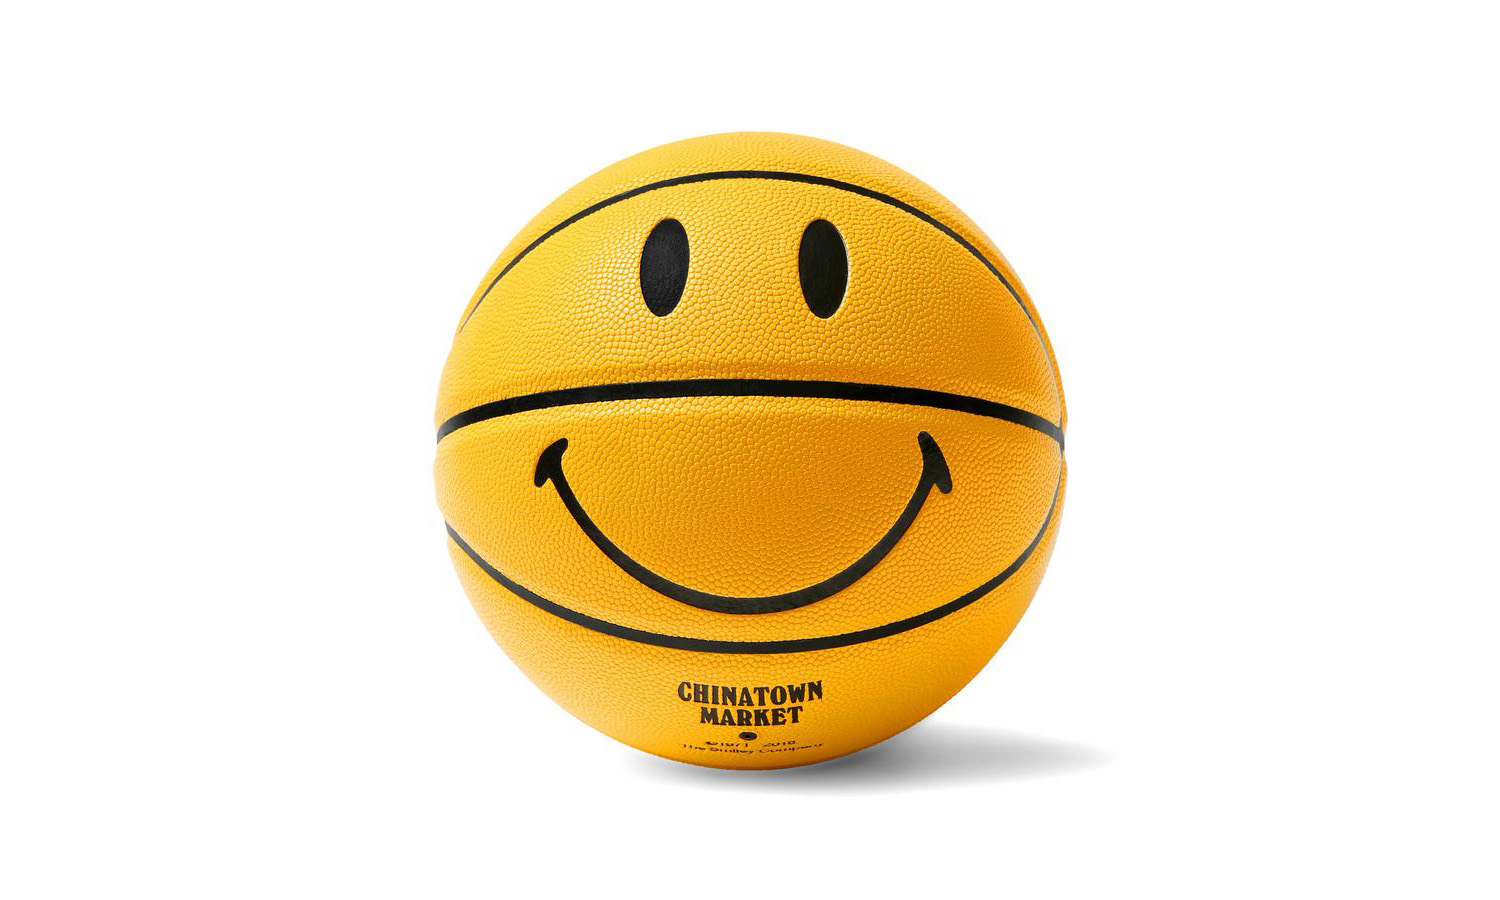 Chinatown Market 人气笑脸篮球再度于官网补货发售